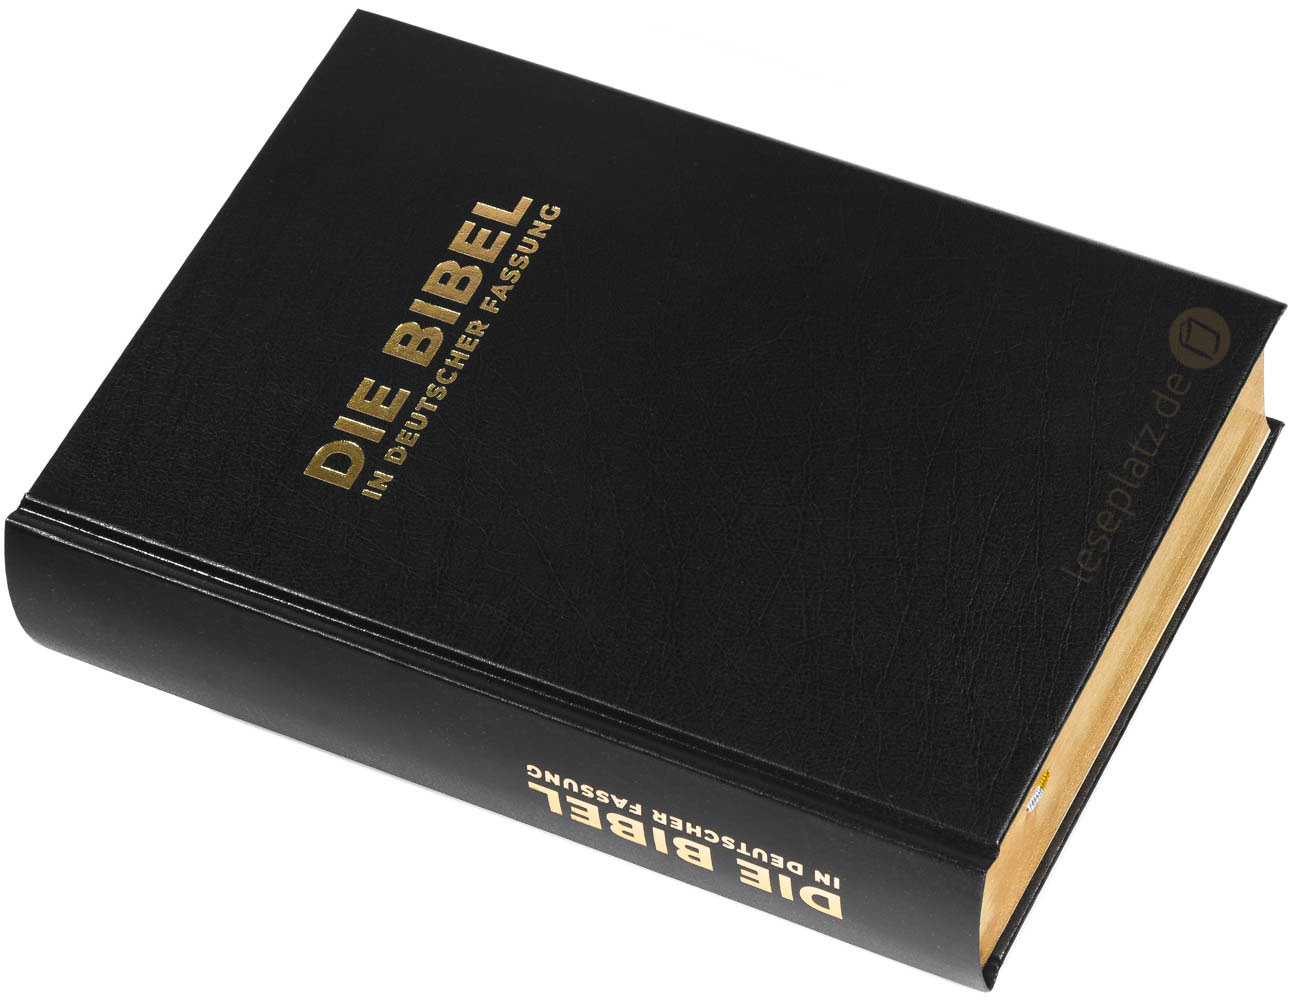 Die Bibel in deutscher Fassung - Standardausgabe Hardcover / Goldschnitt